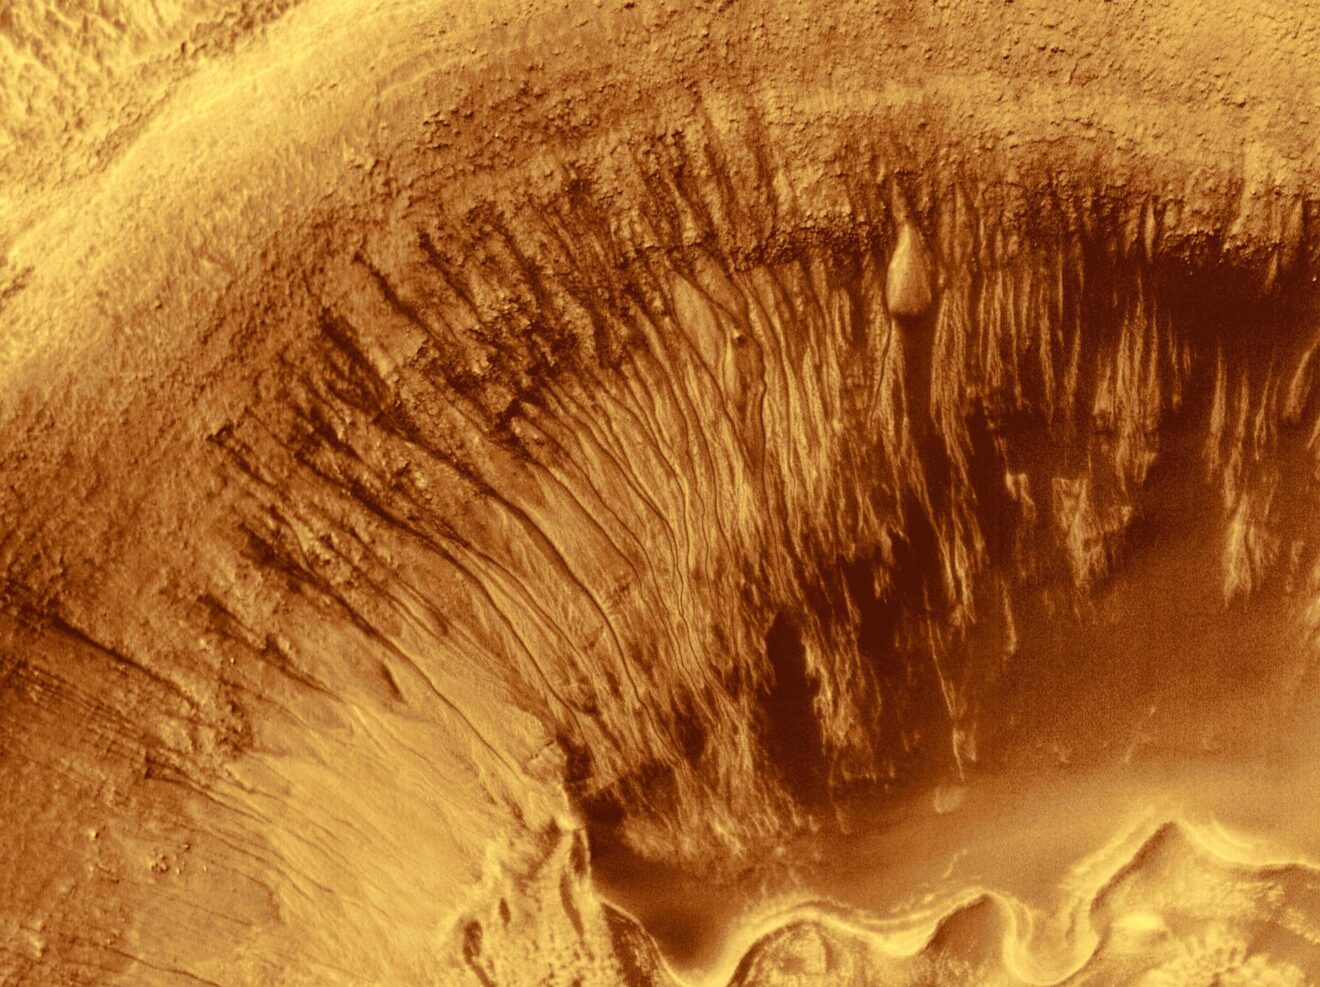 Extremofielen boven Poolcirkel vormen mogelijk blauwdruk voor levensvormen op Mars